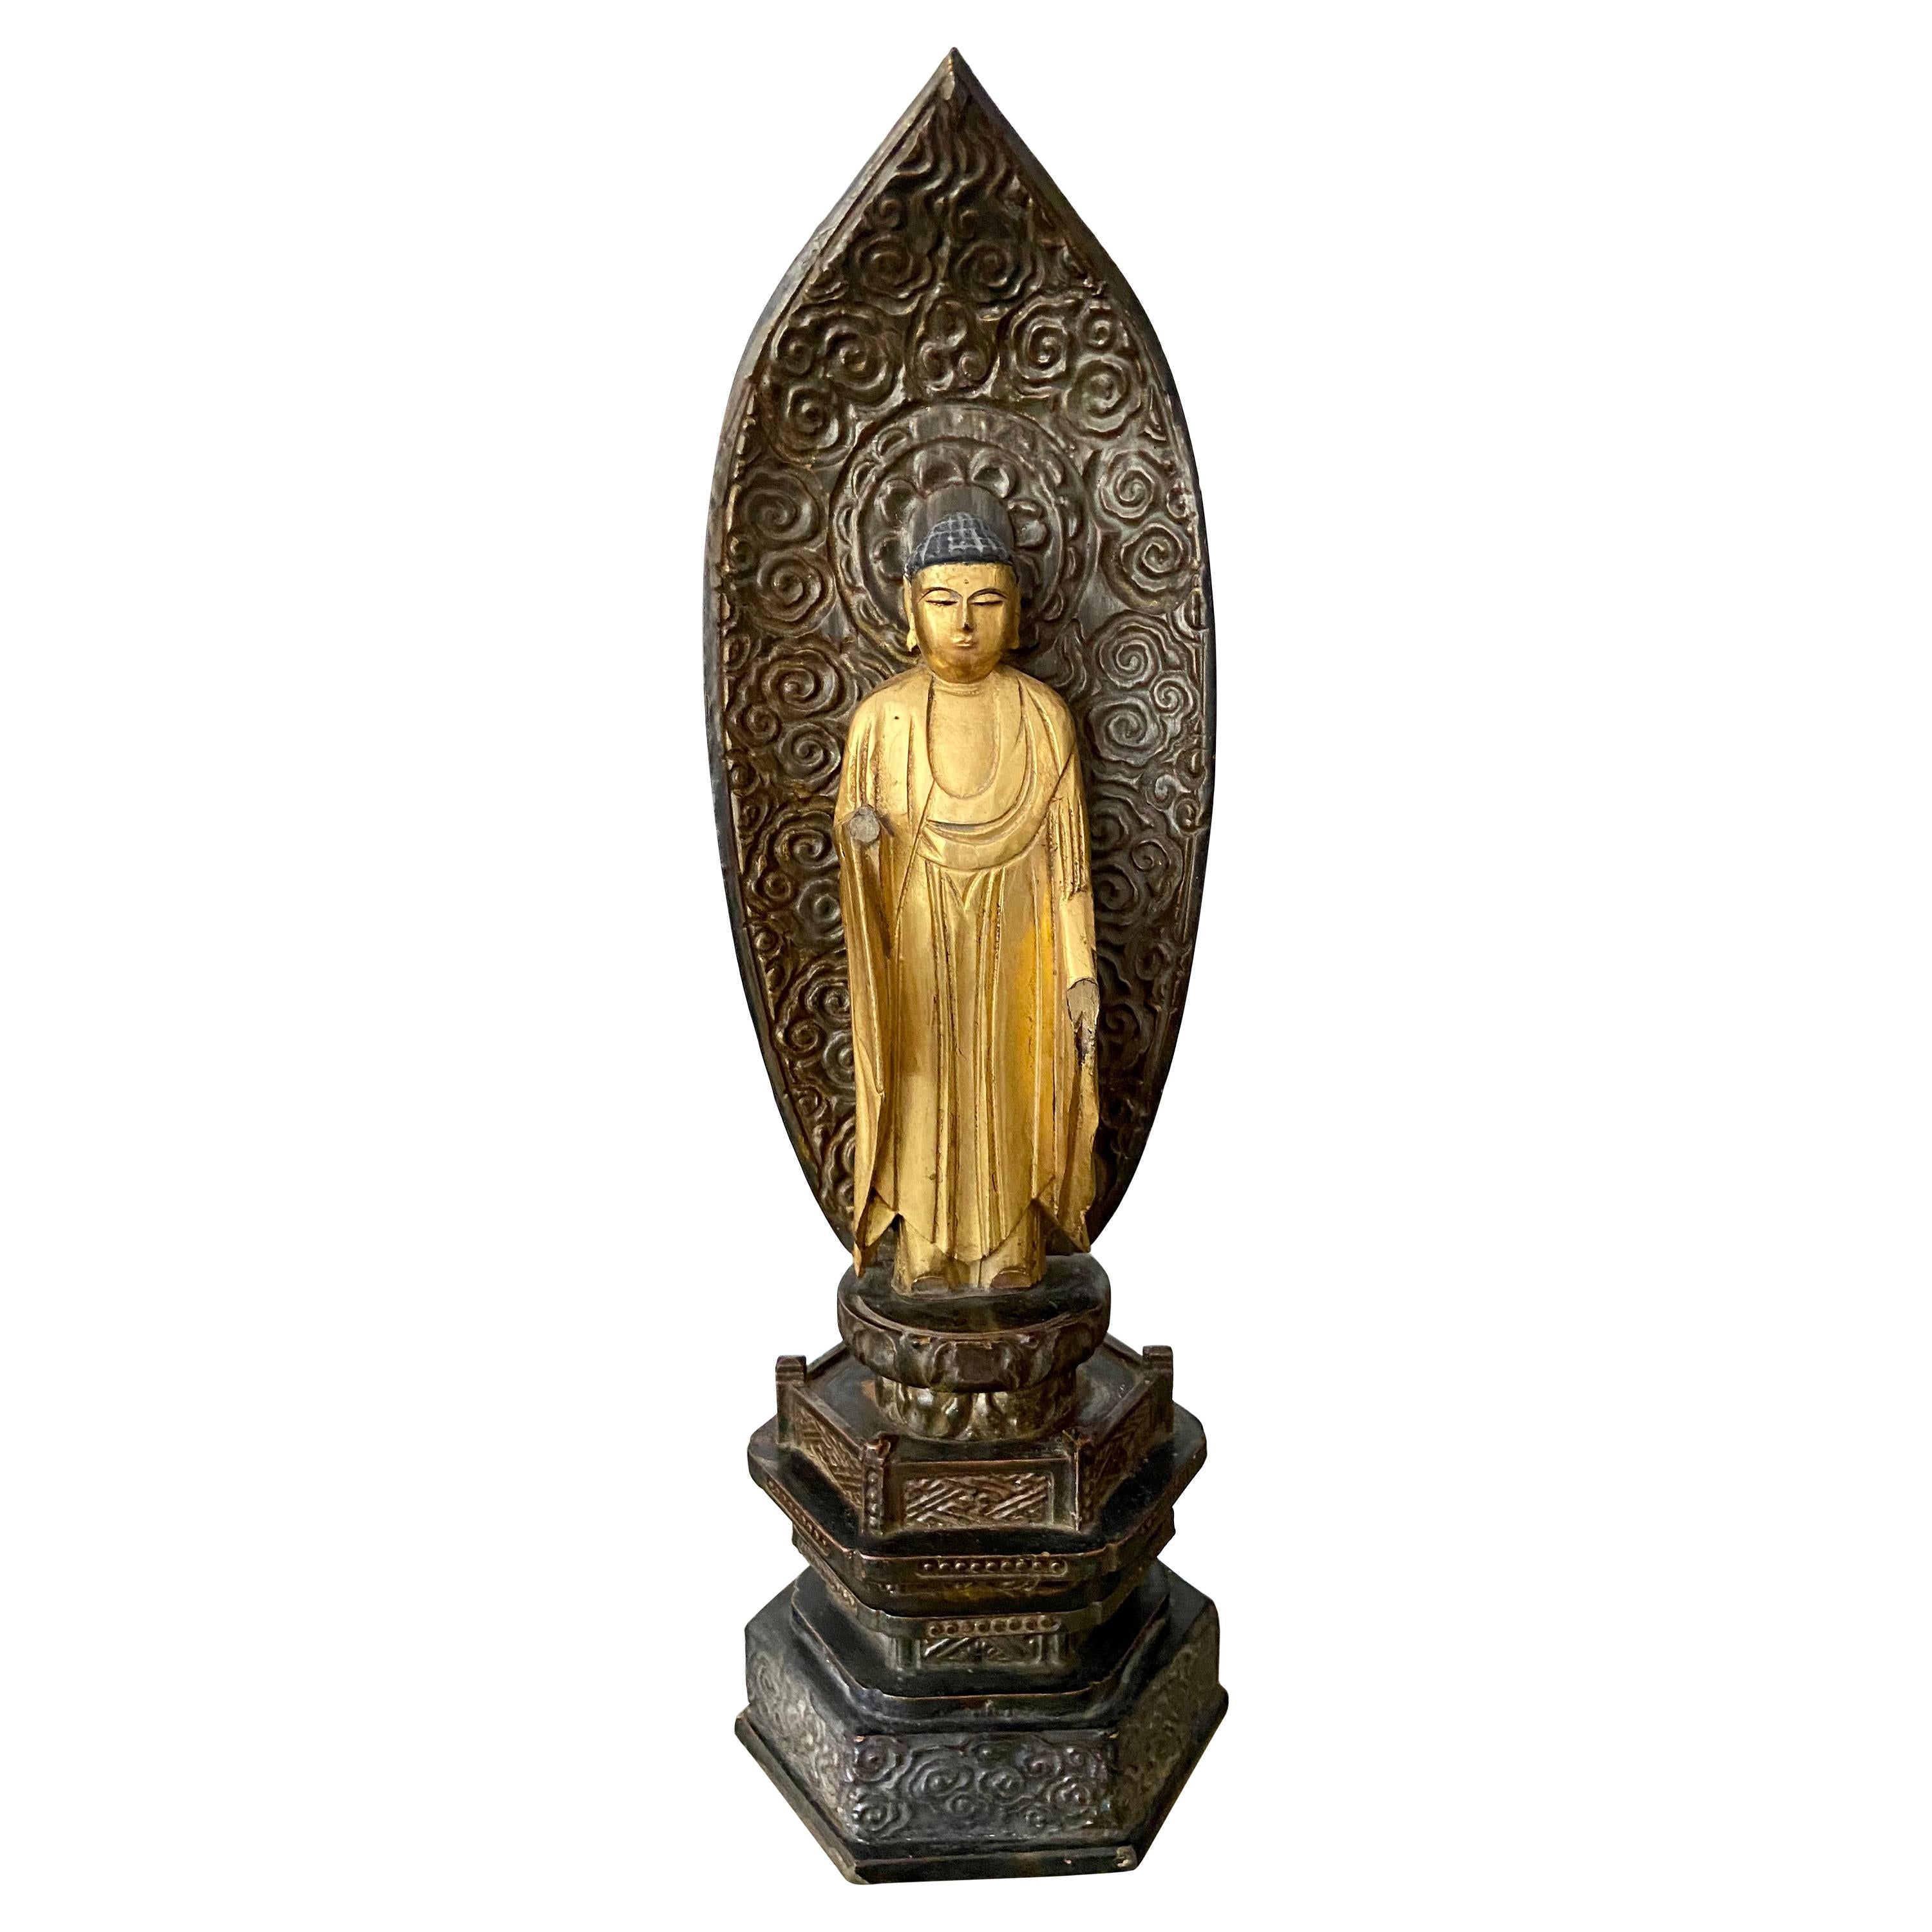 Bouddha Amida japonais du 19ème siècle sur pied en bois doré de la période Edo